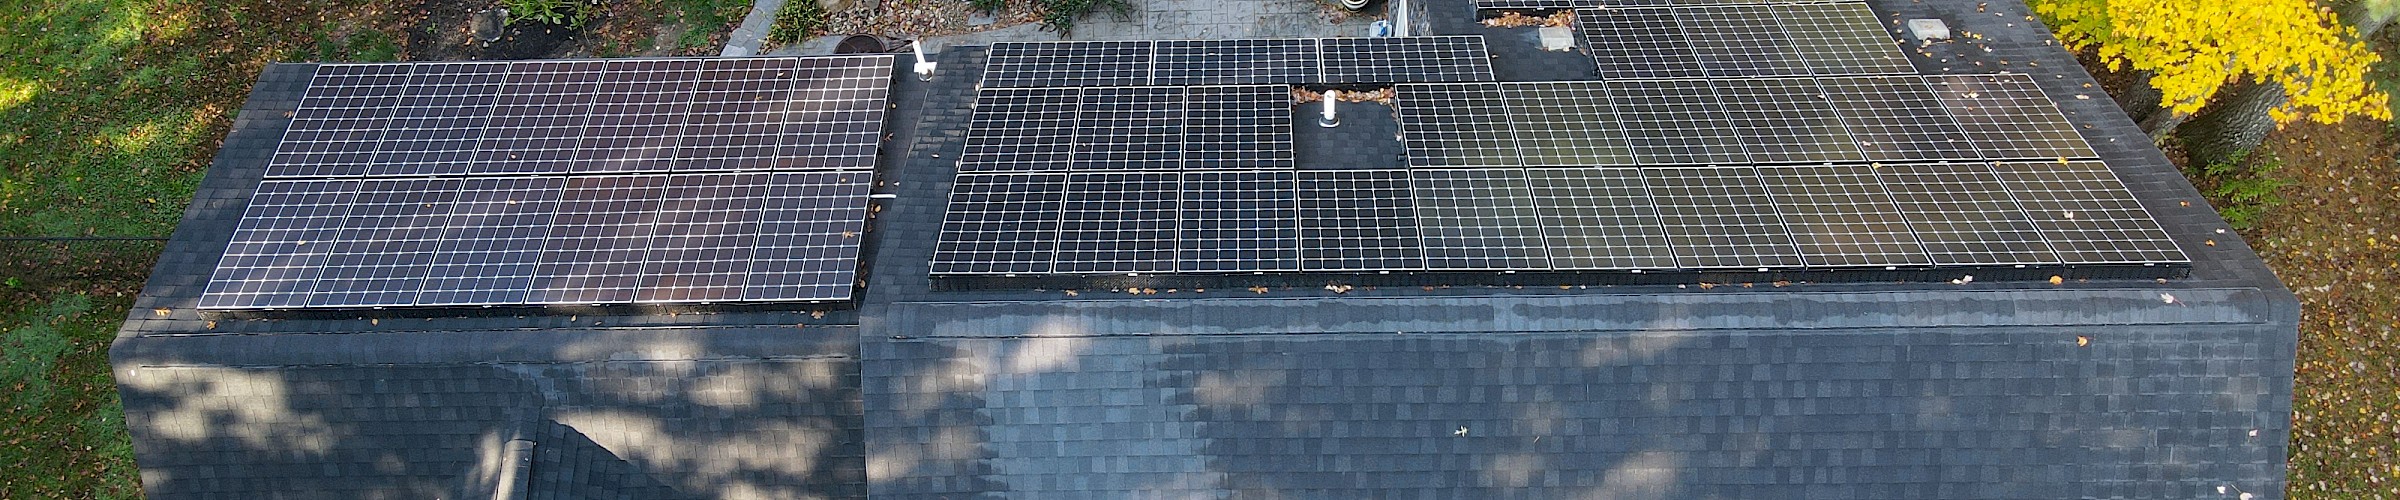 14.35 kW Solar Installation in Pembroke MA